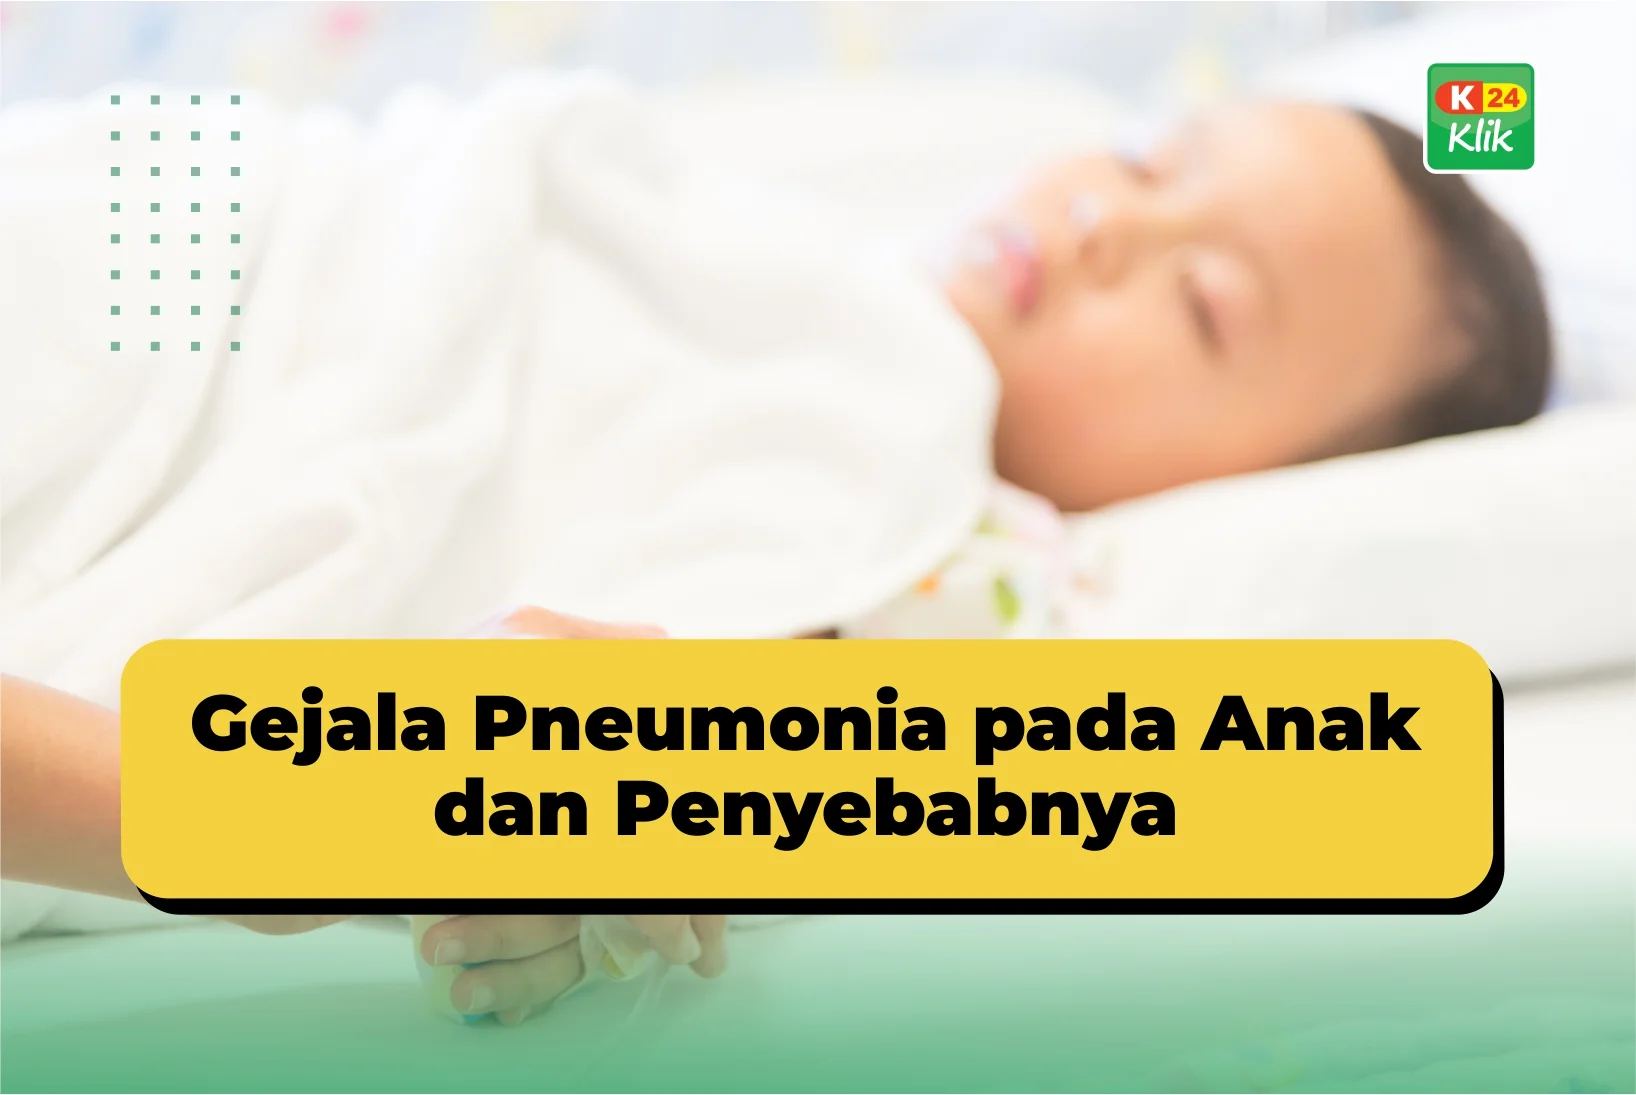 gejala pneumonia pada anak dan kenali gejalanya